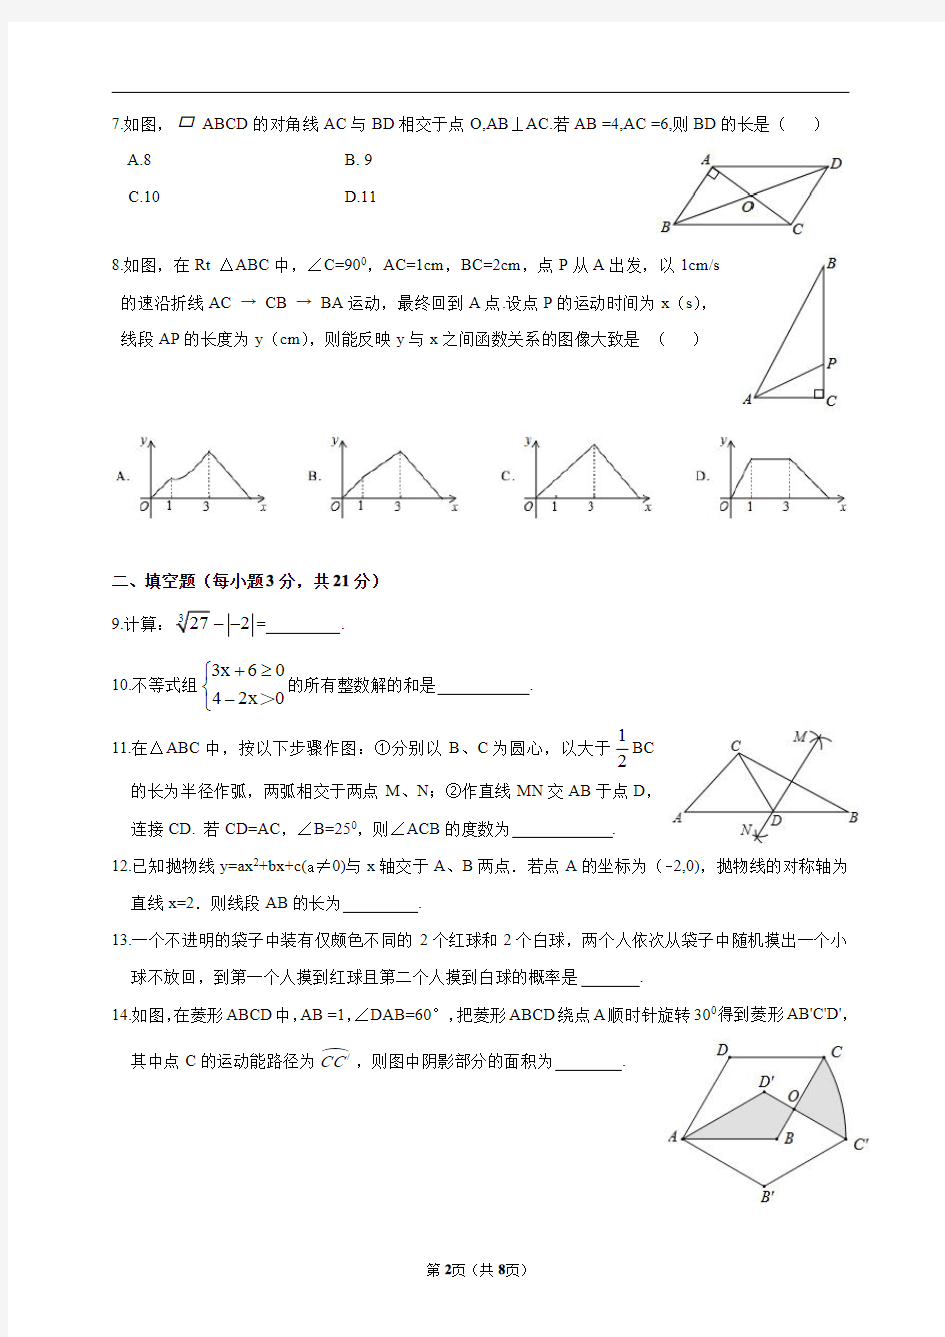 2014年河南省中考数学试卷